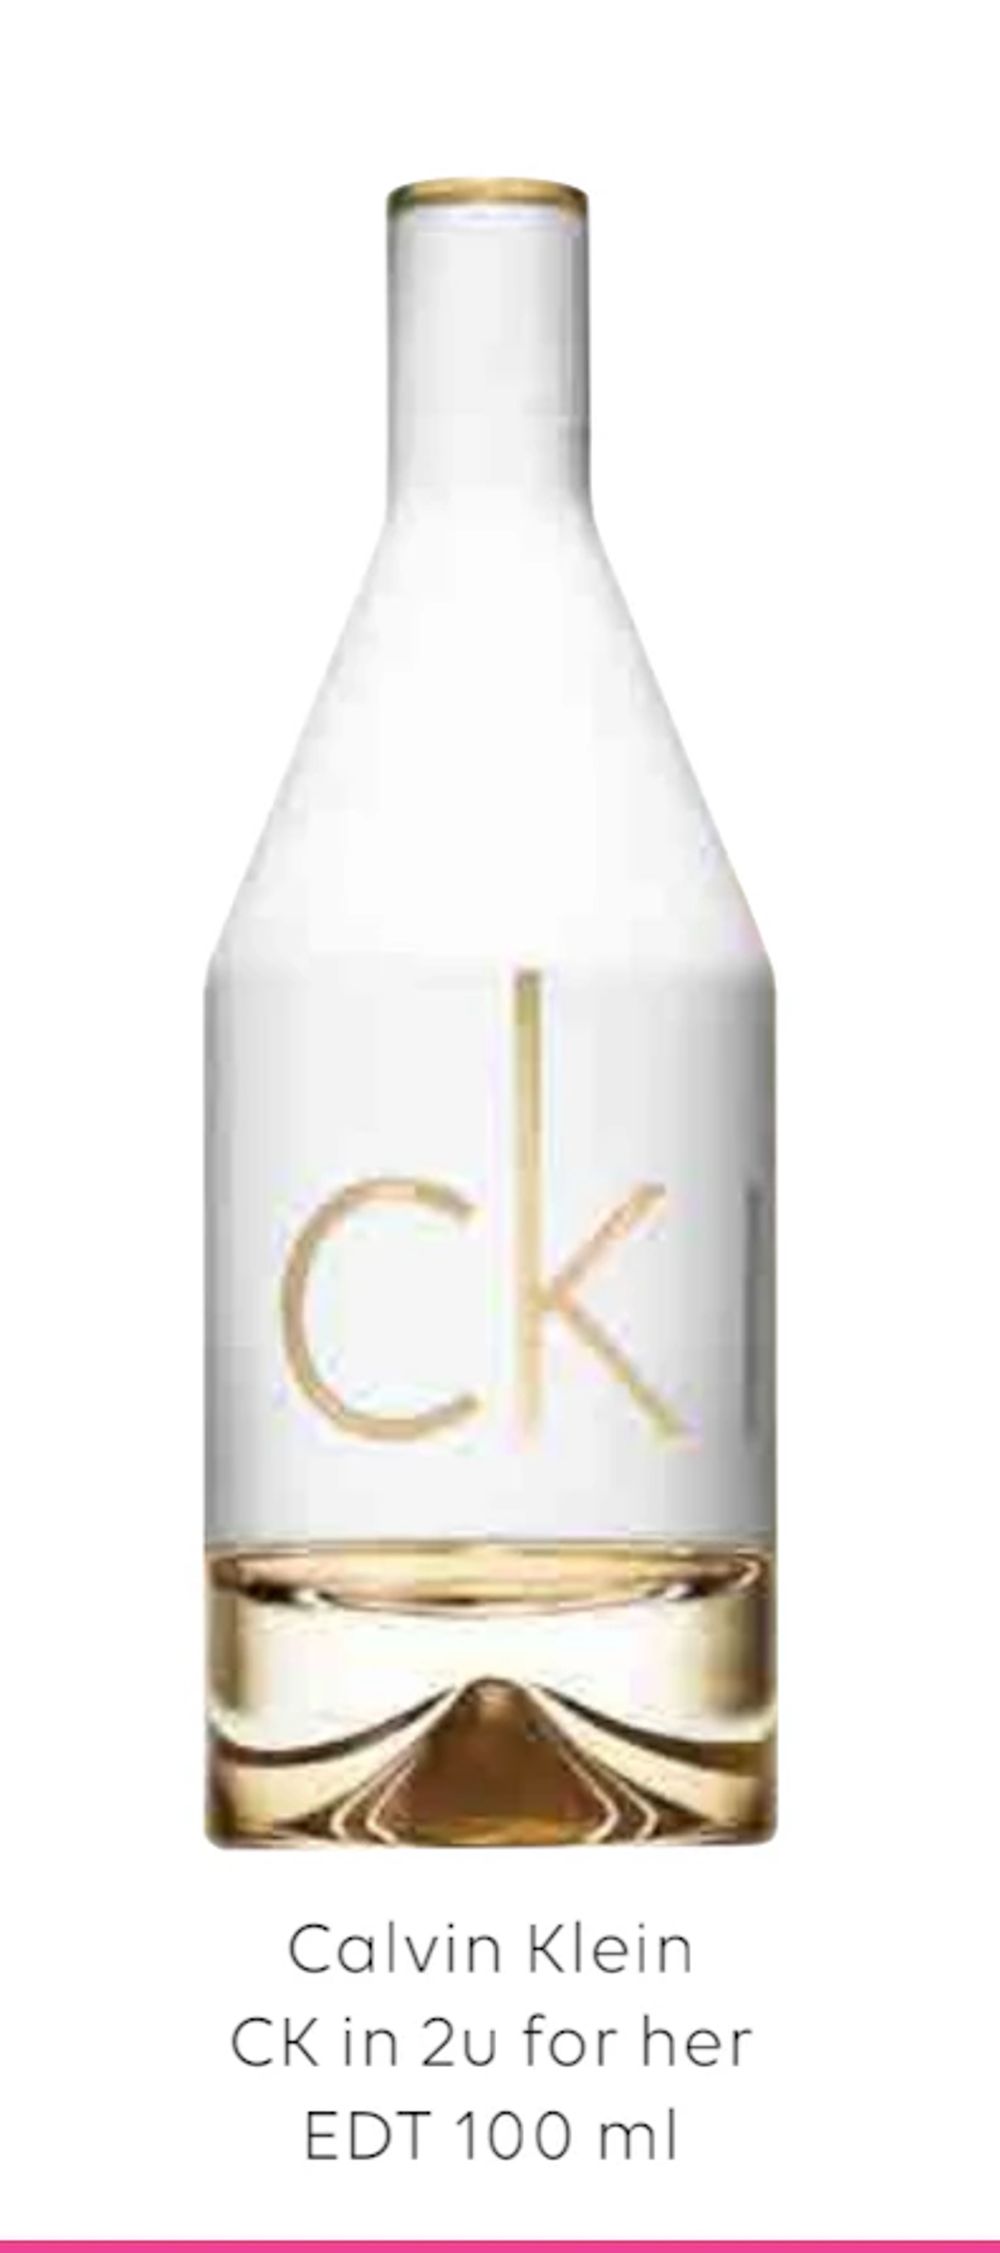 Tilbud på Calvin Klein CK in 2u for her EDT 100 ml fra Scandlines Travel Shop til 249 kr.